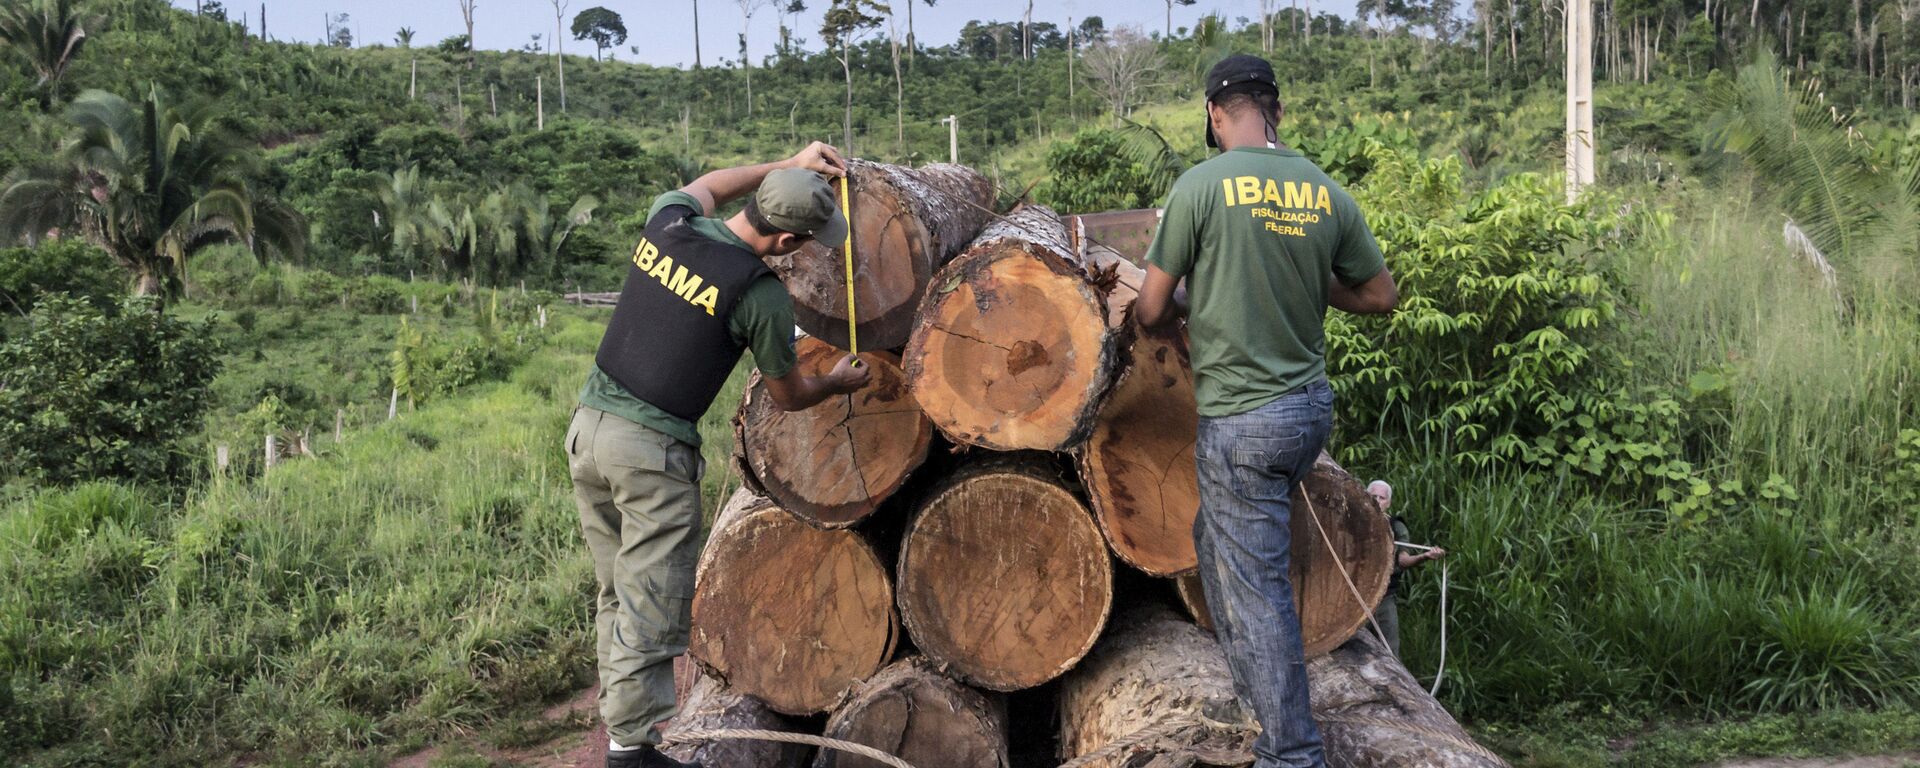 Agentes do Ibama apreendem uma carga ilegal de madeira na área indígena de Cachoeira Seca, no Pará - Sputnik Brasil, 1920, 26.11.2020